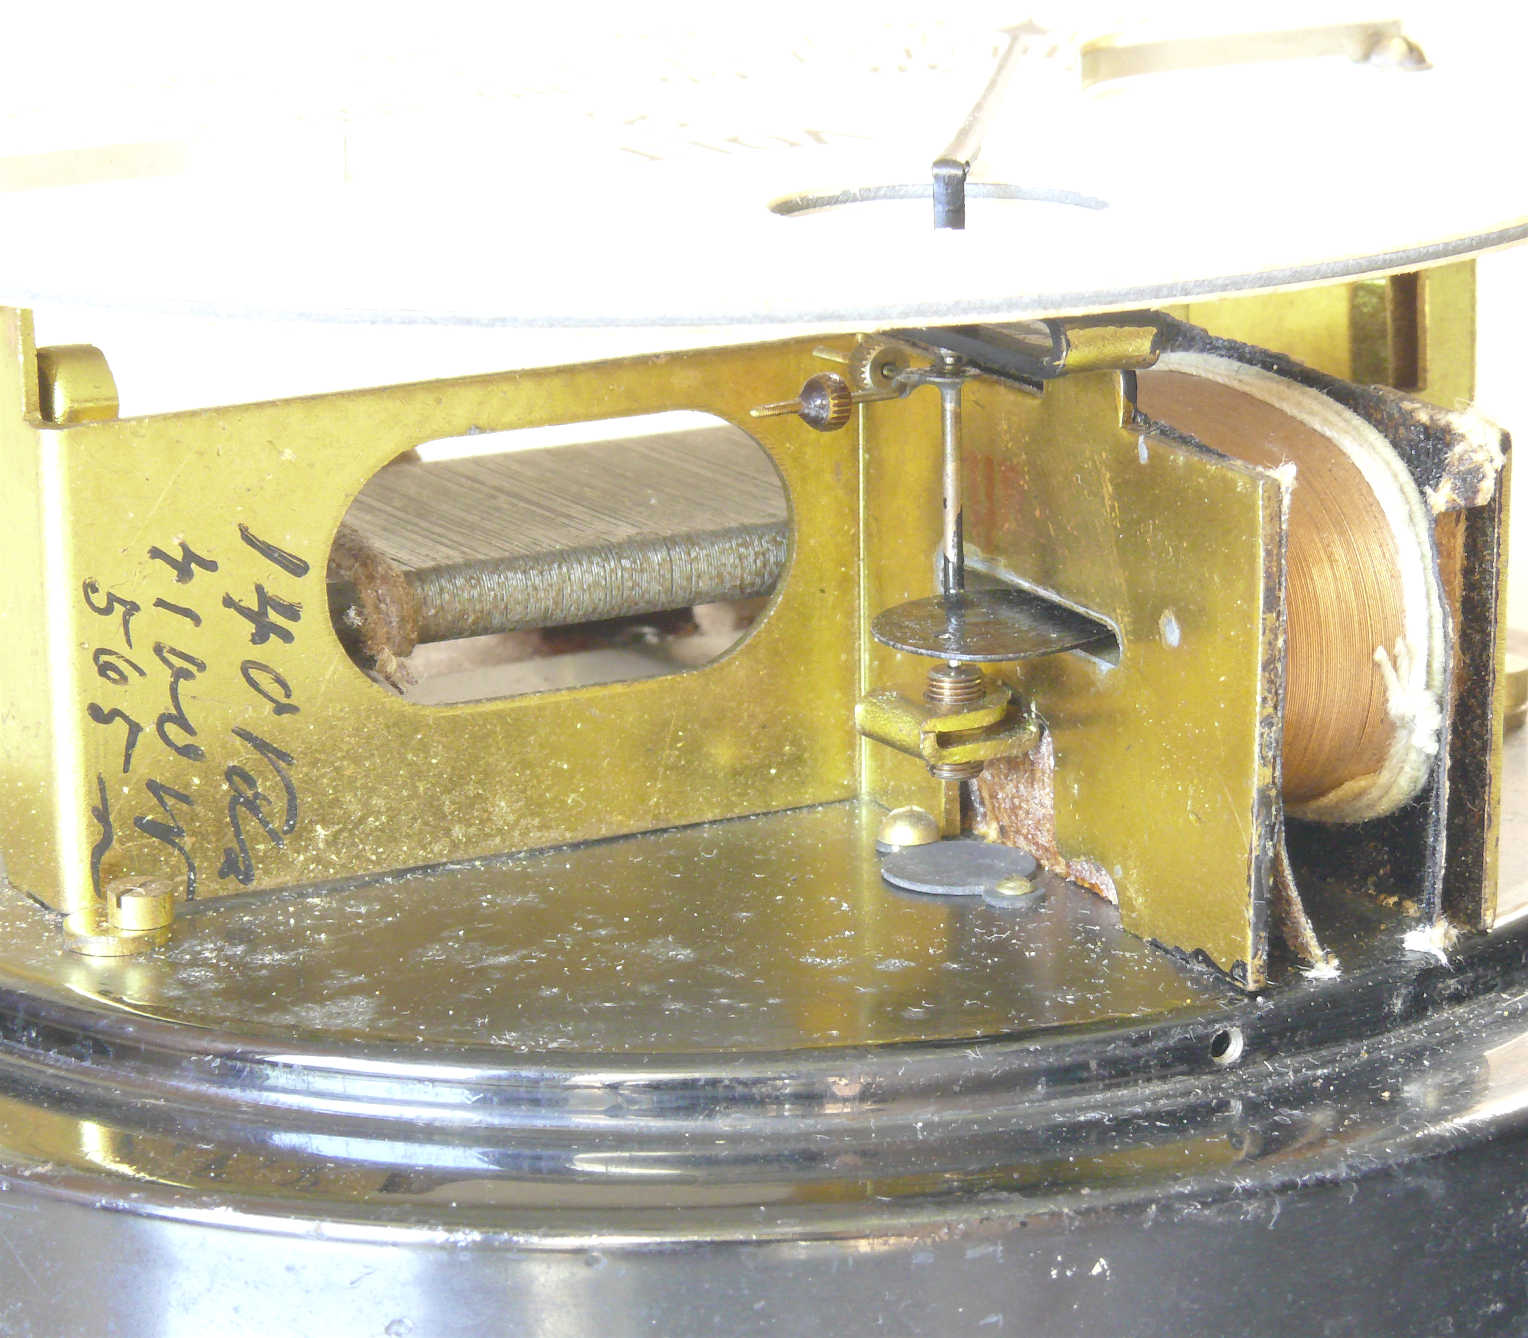 Voltmètre de tableau à fer mobile
(140 V)